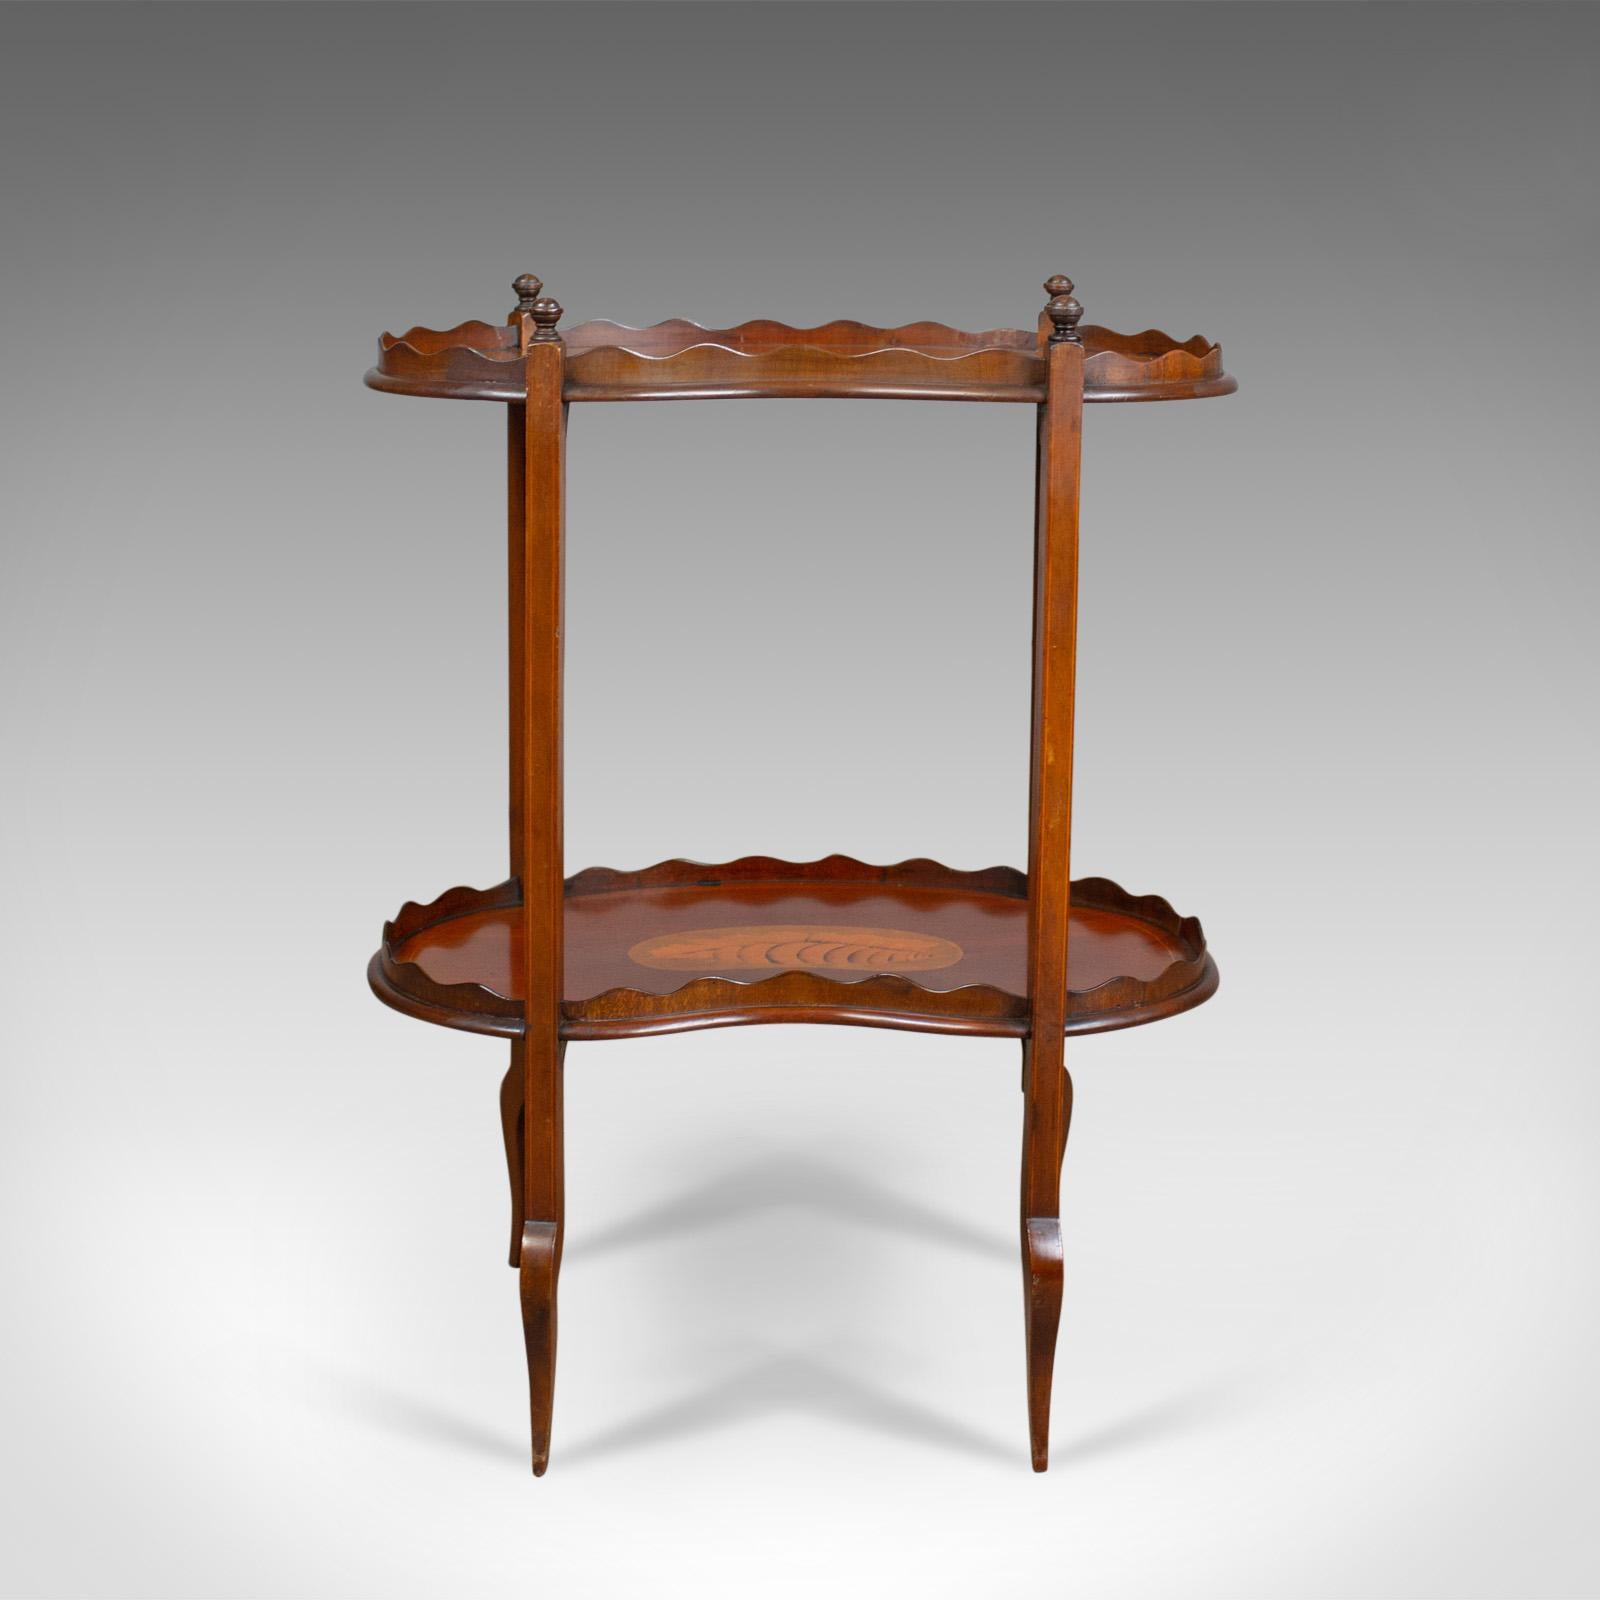 Il s'agit d'une table à thé antique, une table d'appoint anglaise, édouardienne, à deux niveaux, à galerie, en acajou du début du 20e siècle, vers 1910.

Attrayant, bien figuré, acajou
Dans des teintes roussâtres avec une patine vieillie